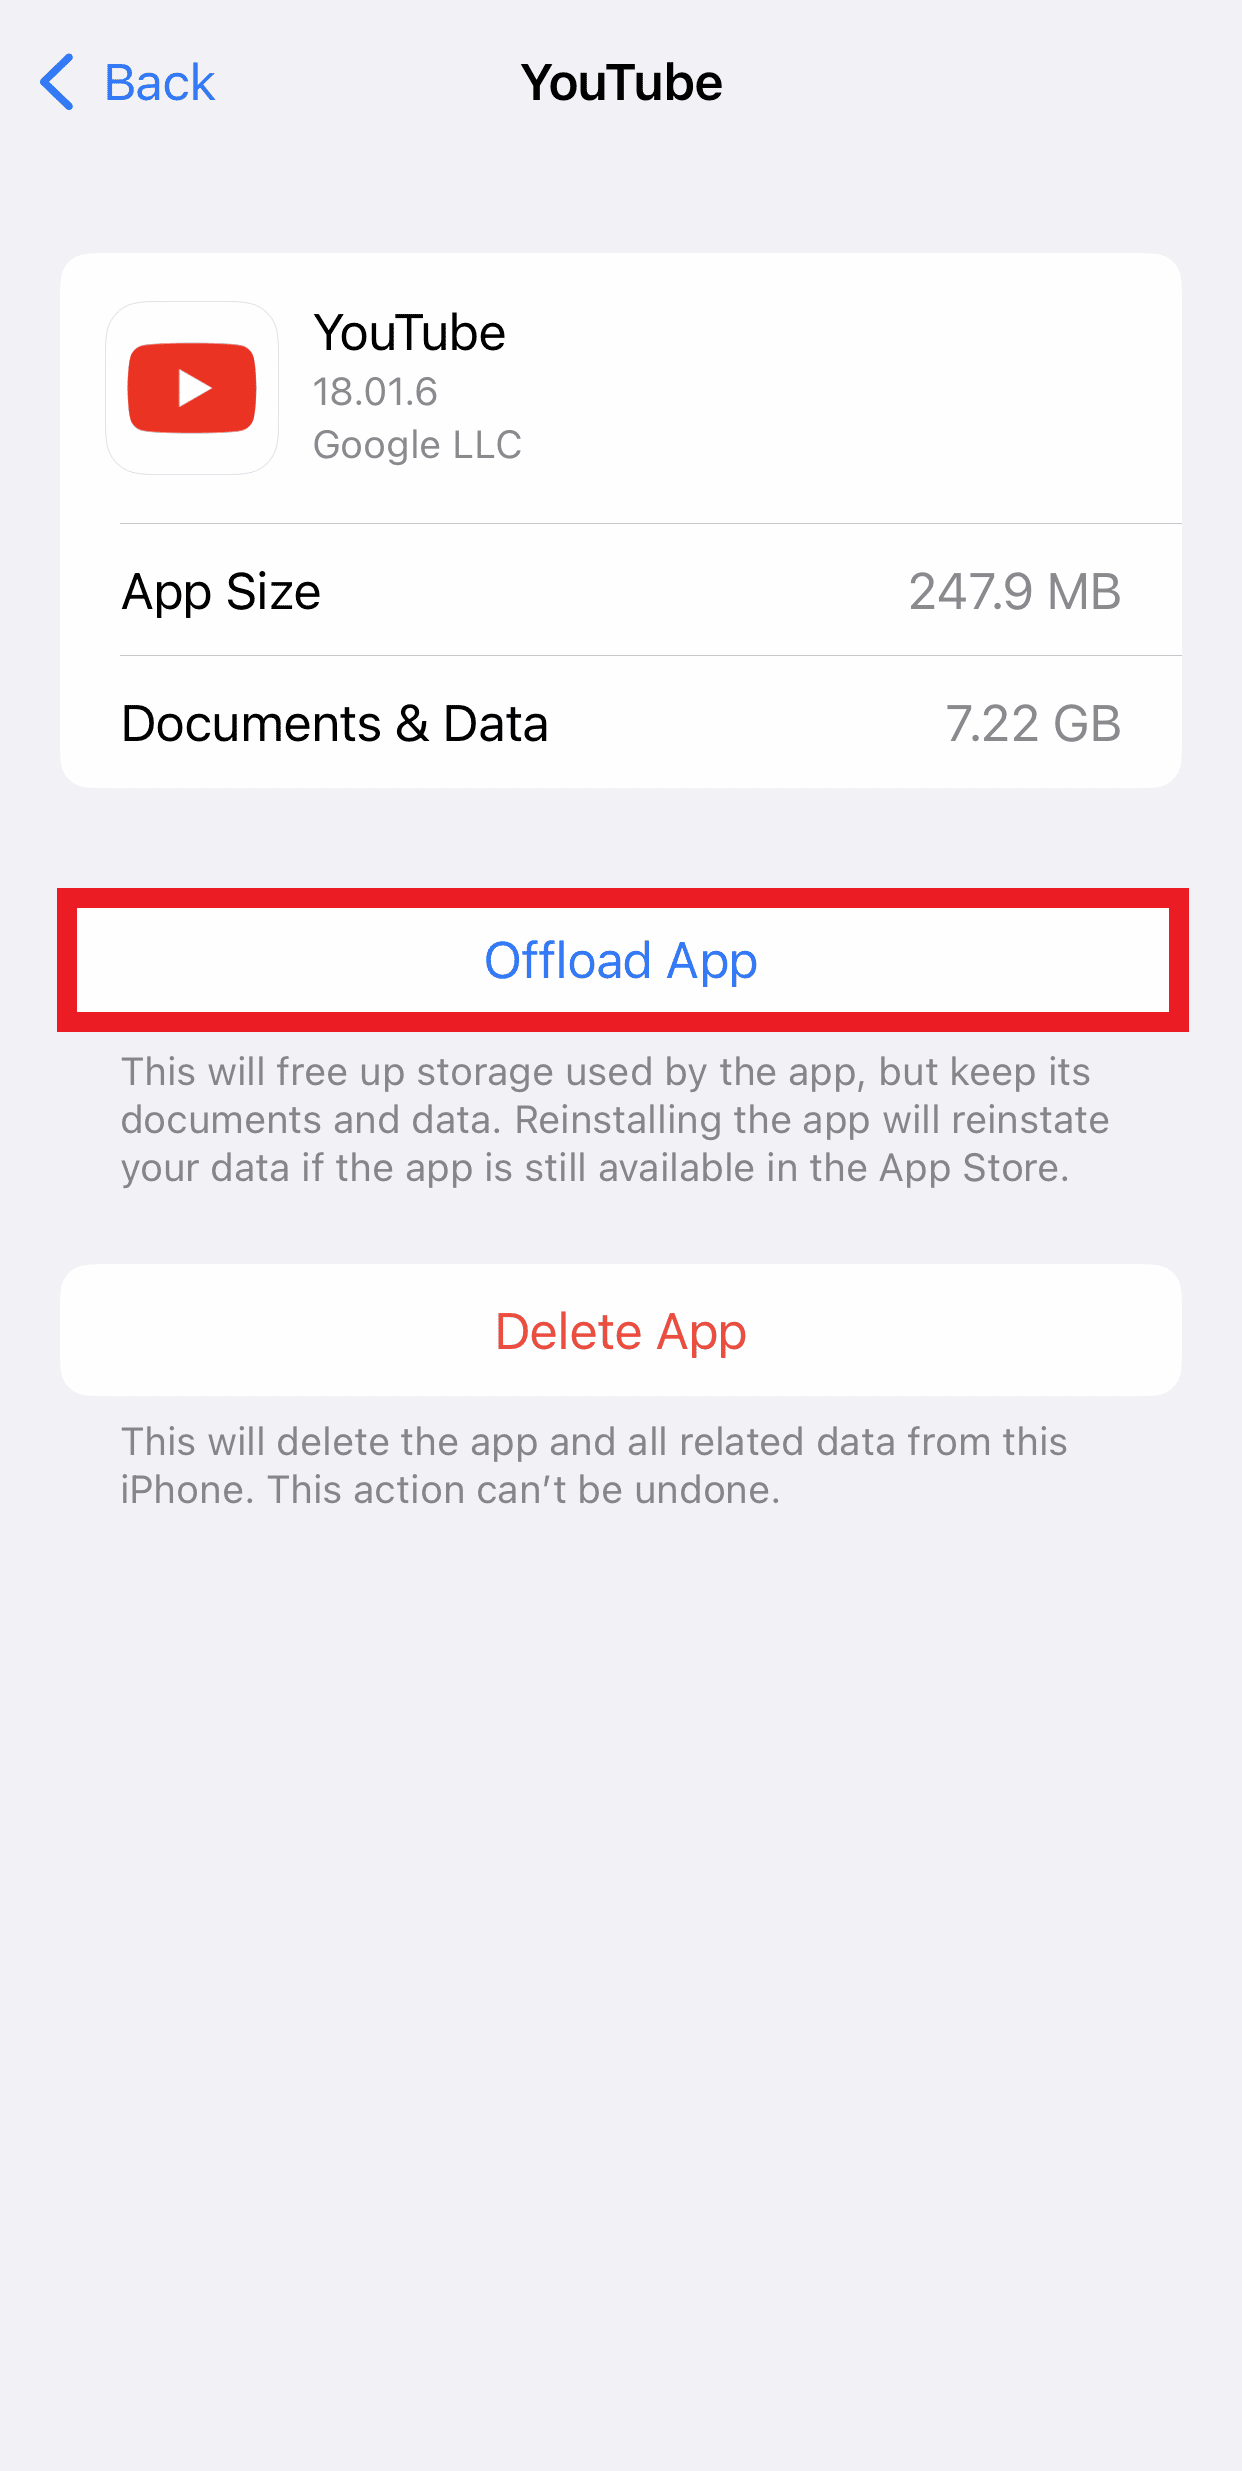 اضغط على Offload App لتحرير مساحة التخزين على جهاز iPhone الخاص بك